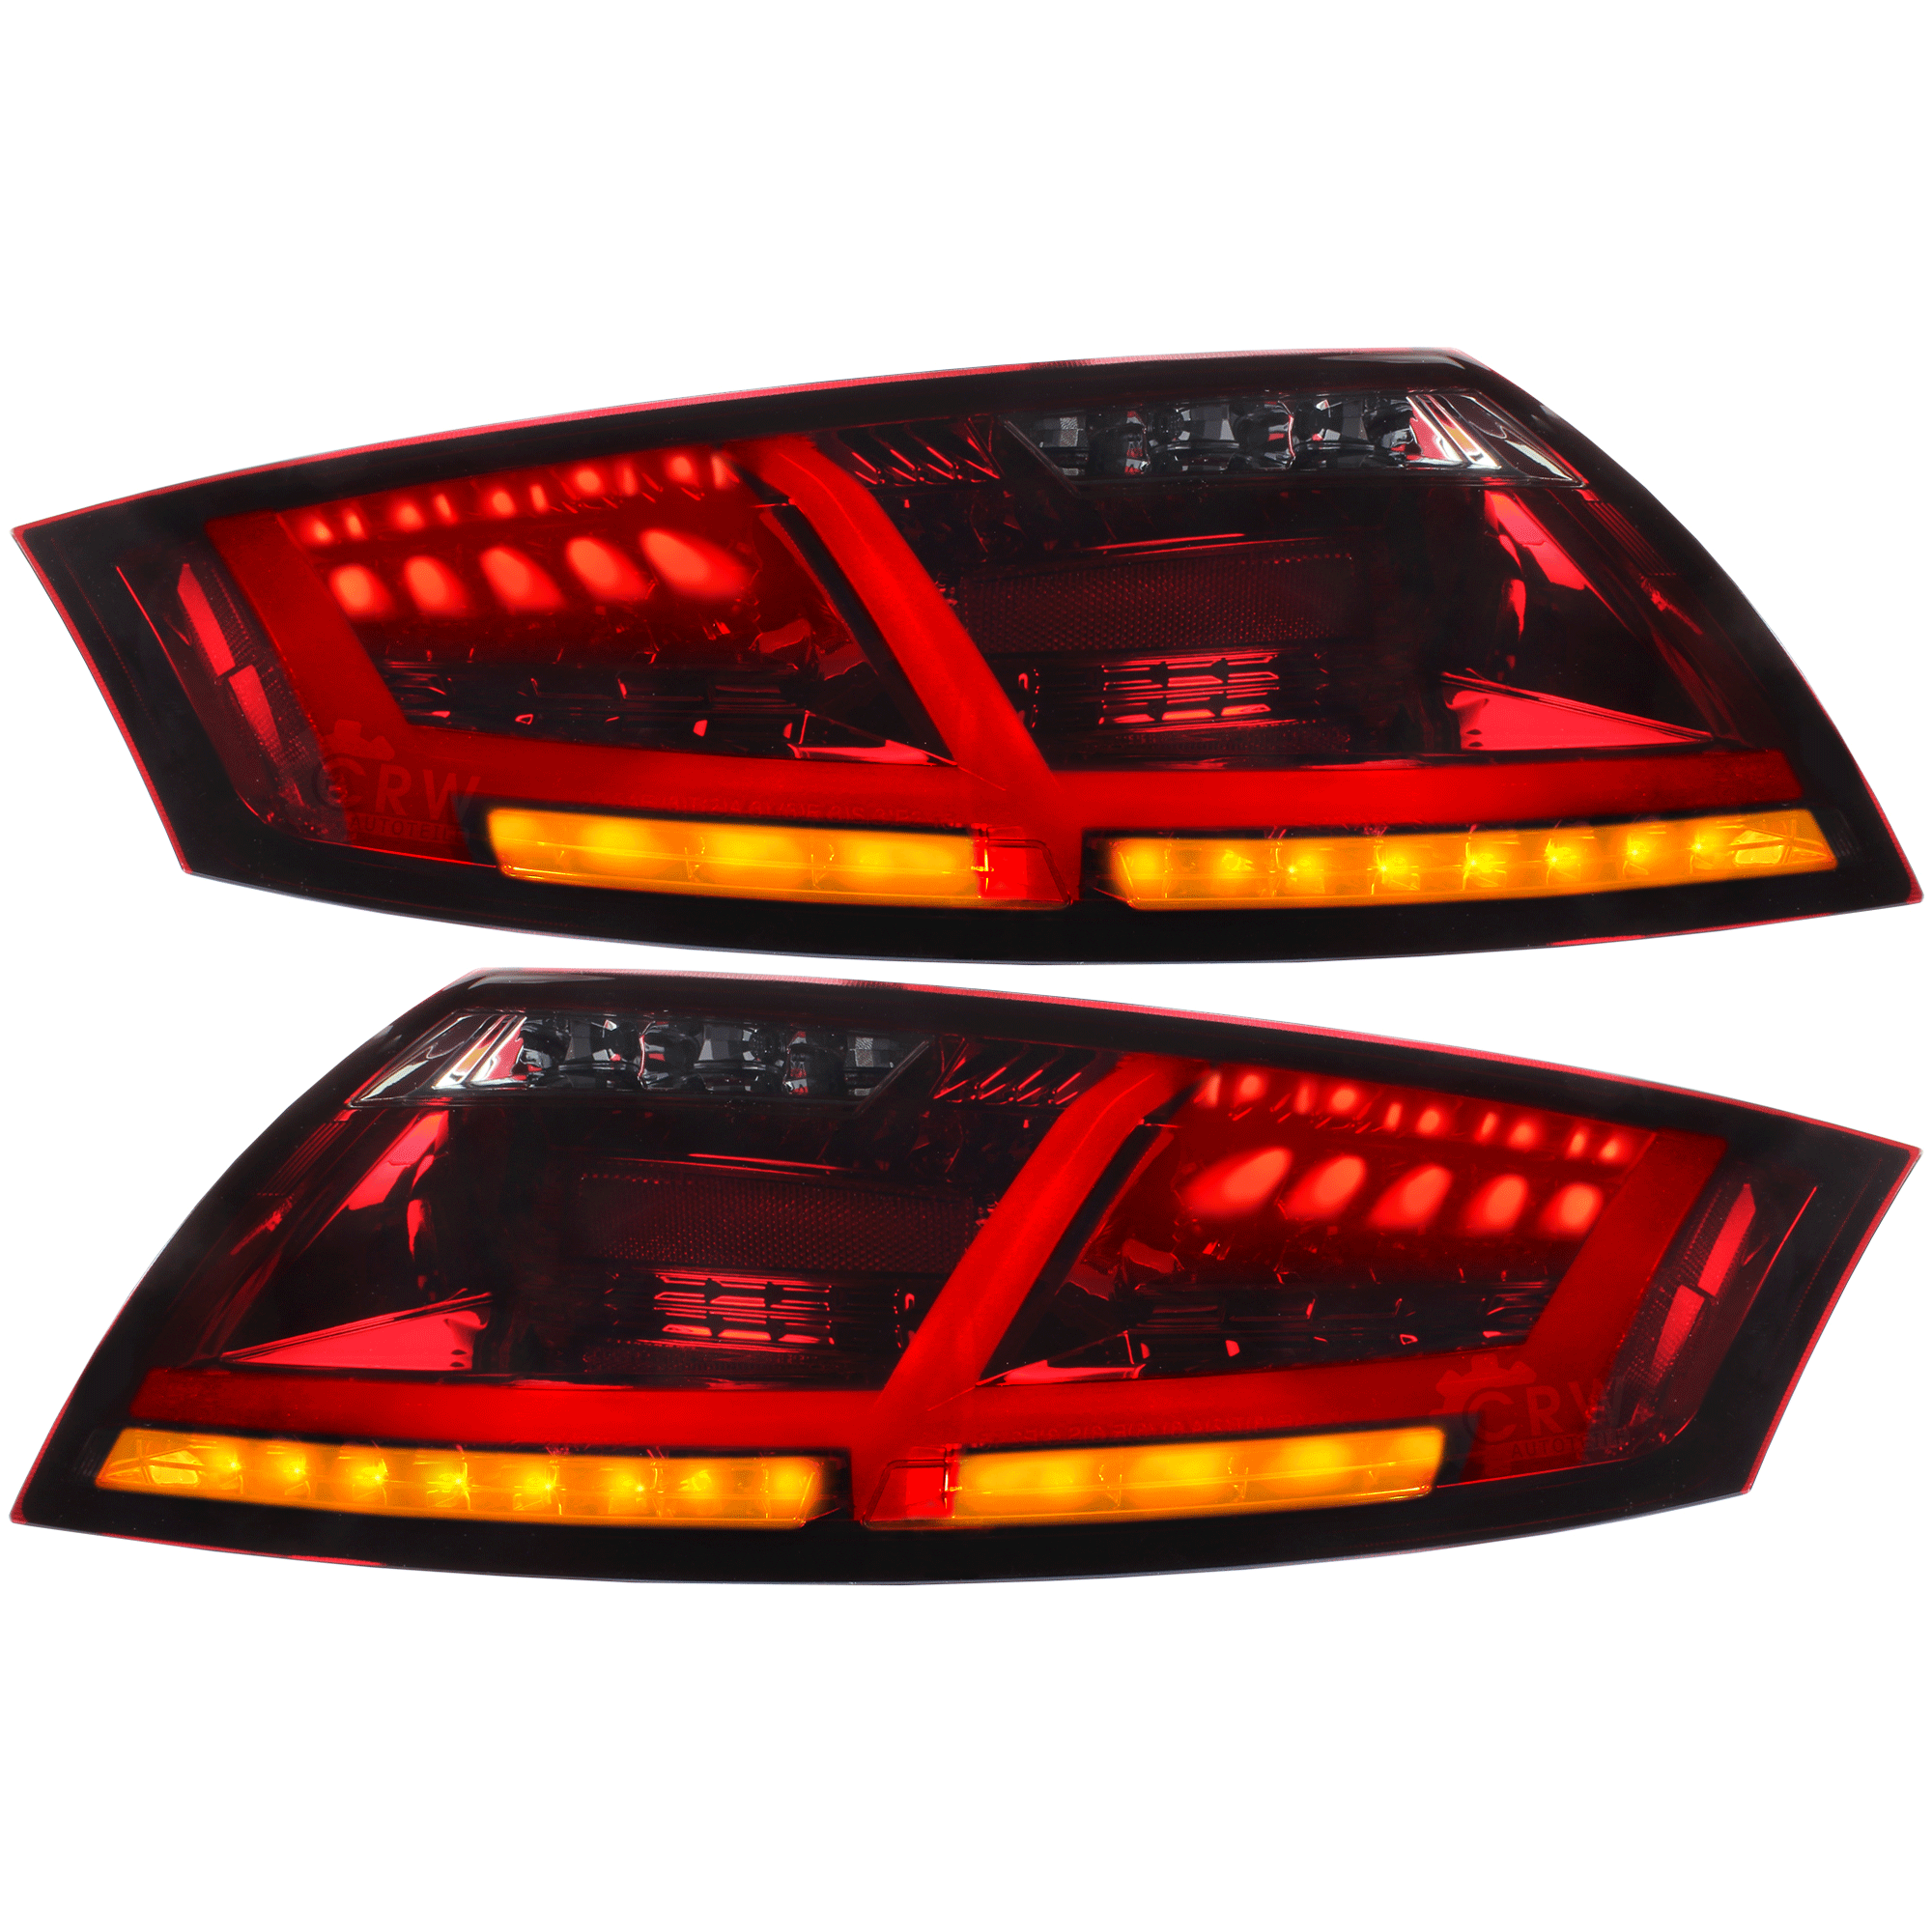 LED Lightbar Rückleuchten für Audi TT 8J Bj. 06-14 rot schwarz inkl. Blinker